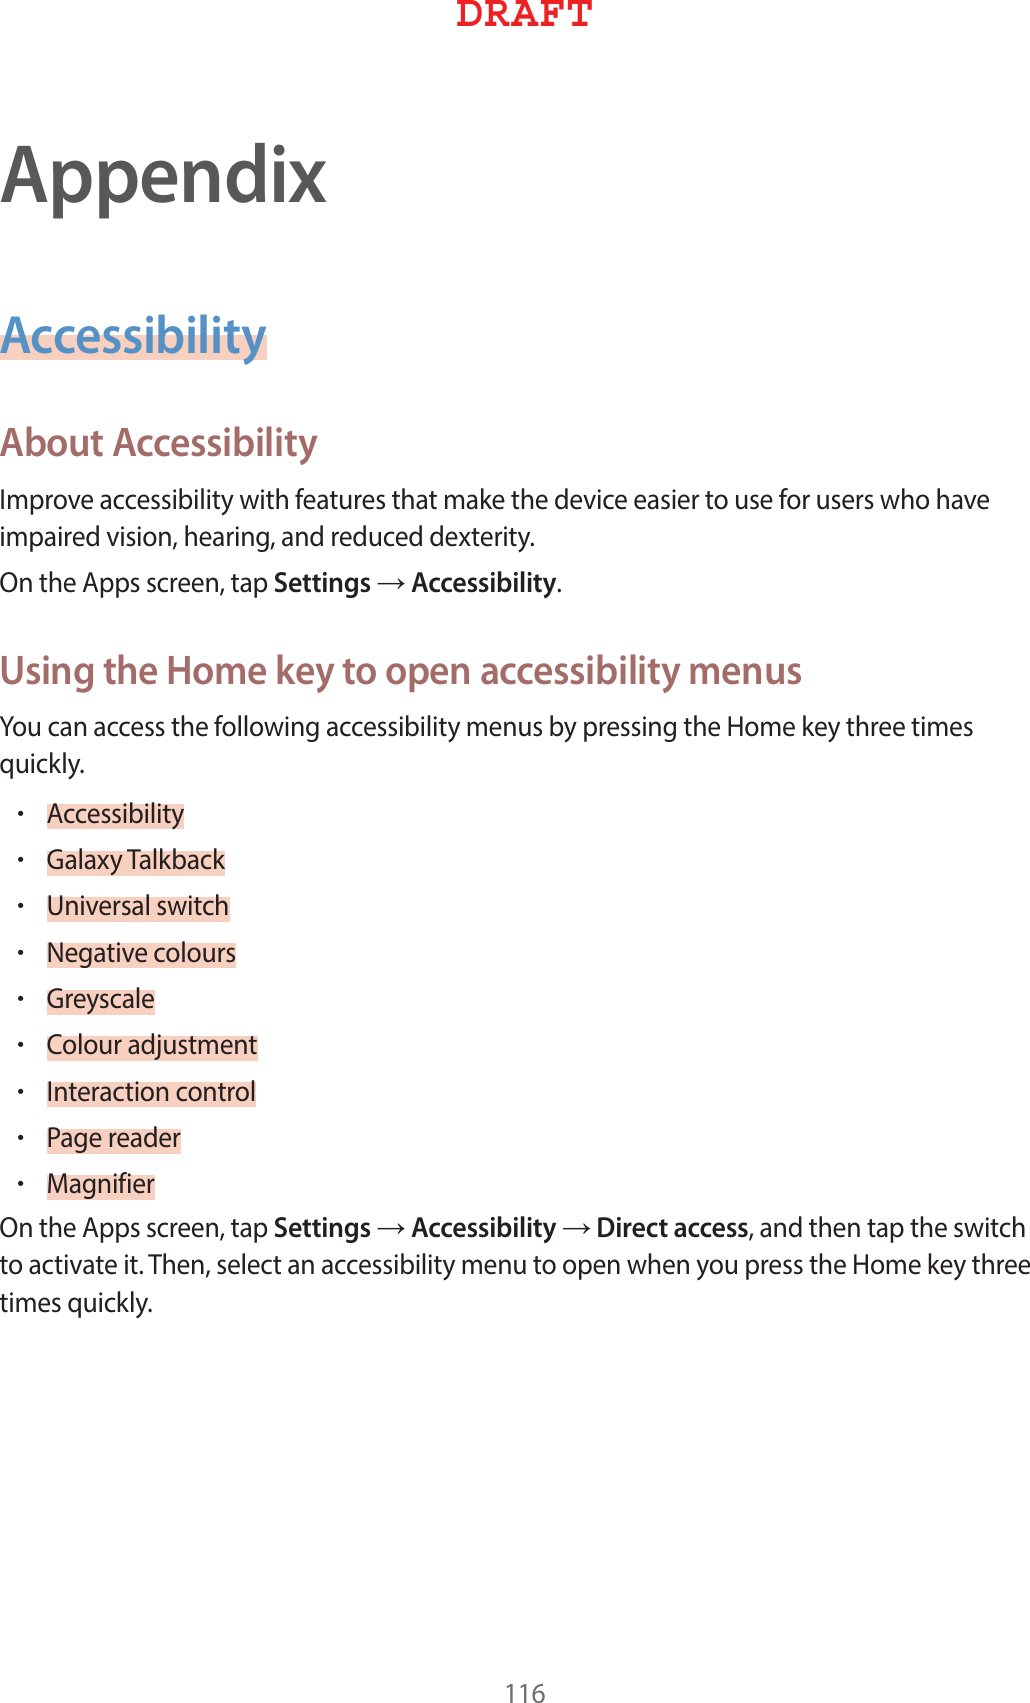 AppendixAccessibilityAbout Accessibility*NQSPWFBDDFTTJCJMJUZXJUIGFBUVSFTUIBUNBLFUIFEFWJDFFBTJFSUPVTFGPSVTFSTXIPIBWFJNQBJSFEWJTJPOIFBSJOHBOESFEVDFEEFYUFSJUZ0OUIF&quot;QQTTDSFFOUBQSettingsĺAccessibilityUsing the Home key to open accessibility menus:PVDBOBDDFTTUIFGPMMPXJOHBDDFTTJCJMJUZNFOVTCZQSFTTJOHUIF)PNFLFZUISFFUJNFTRVJDLMZr&quot;DDFTTJCJMJUZr(BMBYZ5BMLCBDLr6OJWFSTBMTXJUDIr/FHBUJWFDPMPVSTr(SFZTDBMFr$PMPVSBEKVTUNFOUr*OUFSBDUJPODPOUSPMr1BHFSFBEFSr.BHOJGJFS0OUIF&quot;QQTTDSFFOUBQSettingsĺAccessibilityĺDirect accessBOEUIFOUBQUIFTXJUDIUPBDUJWBUFJU5IFOTFMFDUBOBDDFTTJCJMJUZNFOVUPPQFOXIFOZPVQSFTTUIF)PNFLFZUISFFUJNFTRVJDLMZ%3&quot;&apos;5